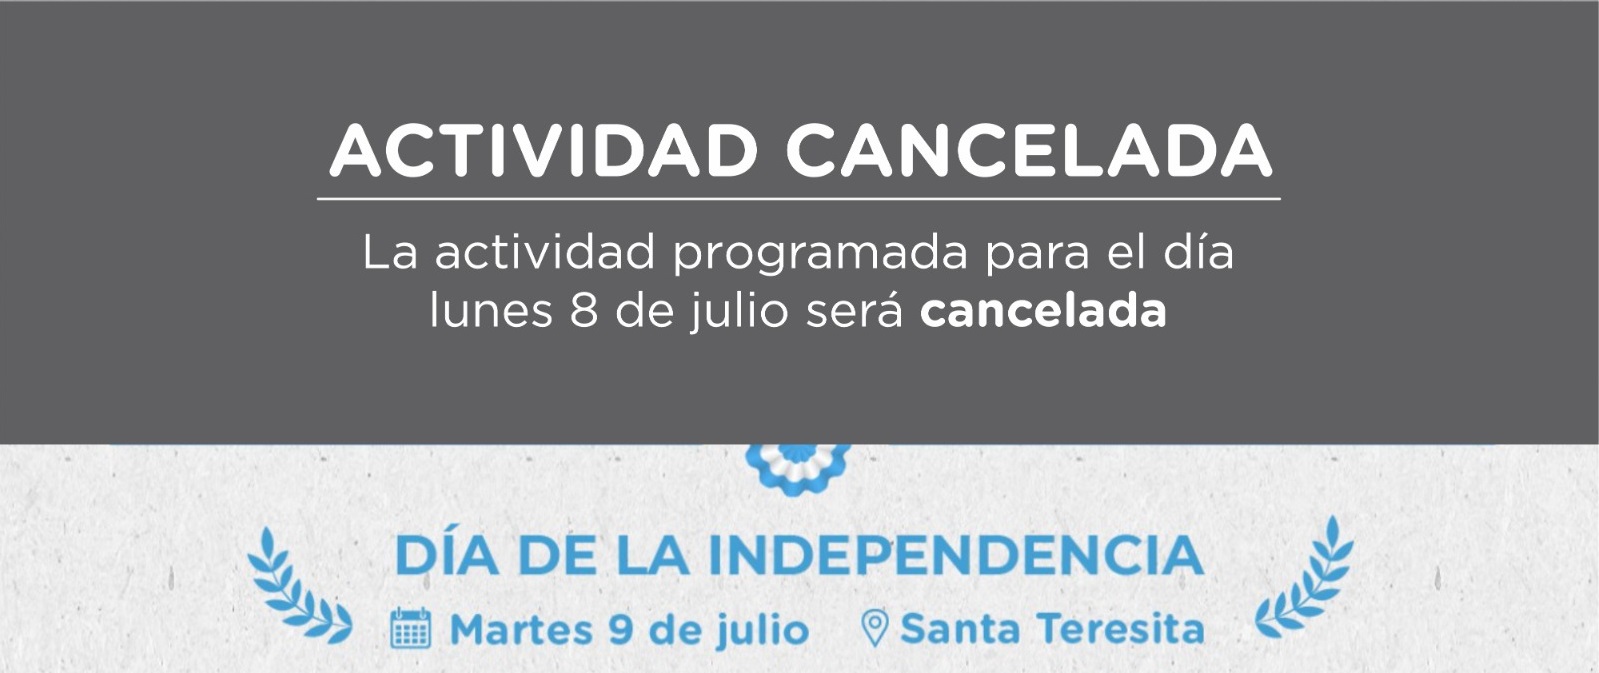 Se cancela la velada artística y cultural prevista para el lunes 8 de julio en Santa Teresita